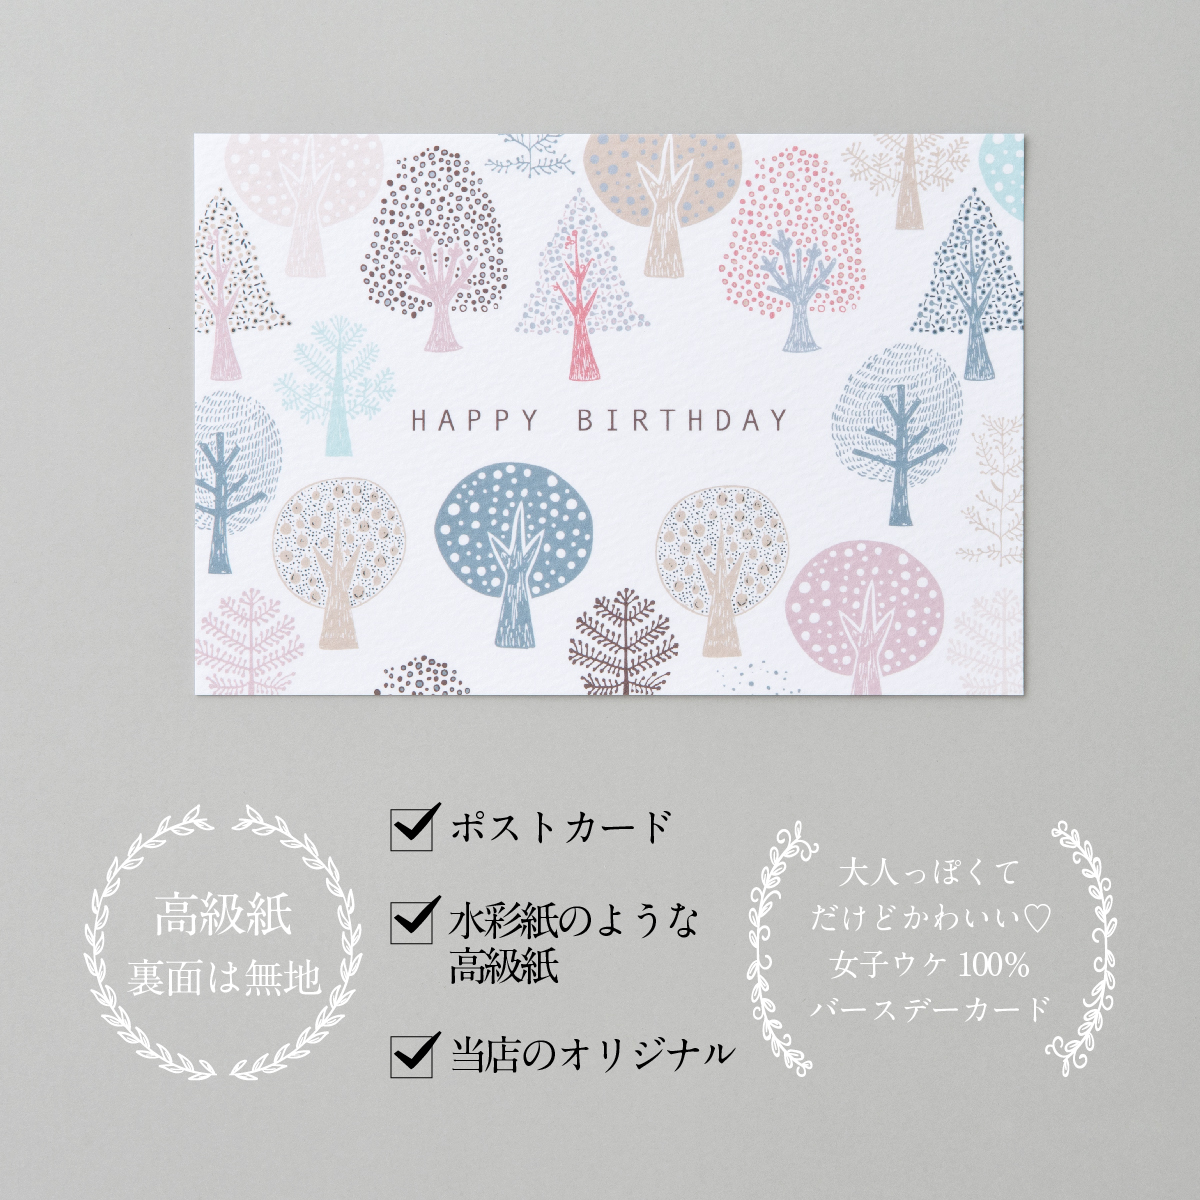 可愛いイラストのバースデーカード 可愛いデザインが人気です バースデーカード 森ピンク Birthday 高品質新品 Card グリーティングカード ギフト かわいい 感謝 誕生日カード メッセージカード プレゼント おしゃれ